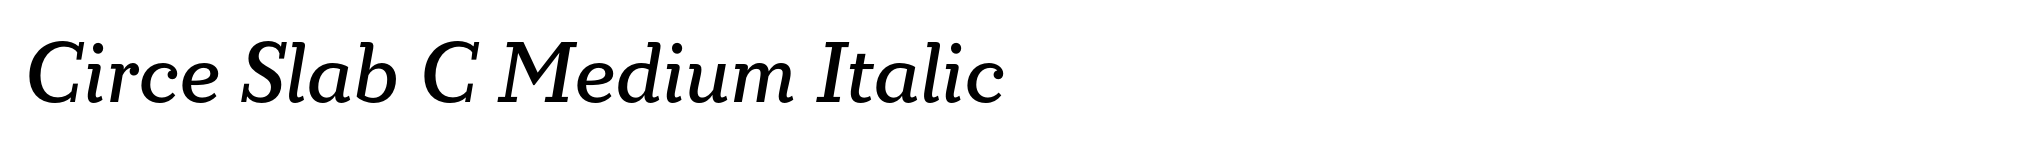 Circe Slab C Medium Italic image